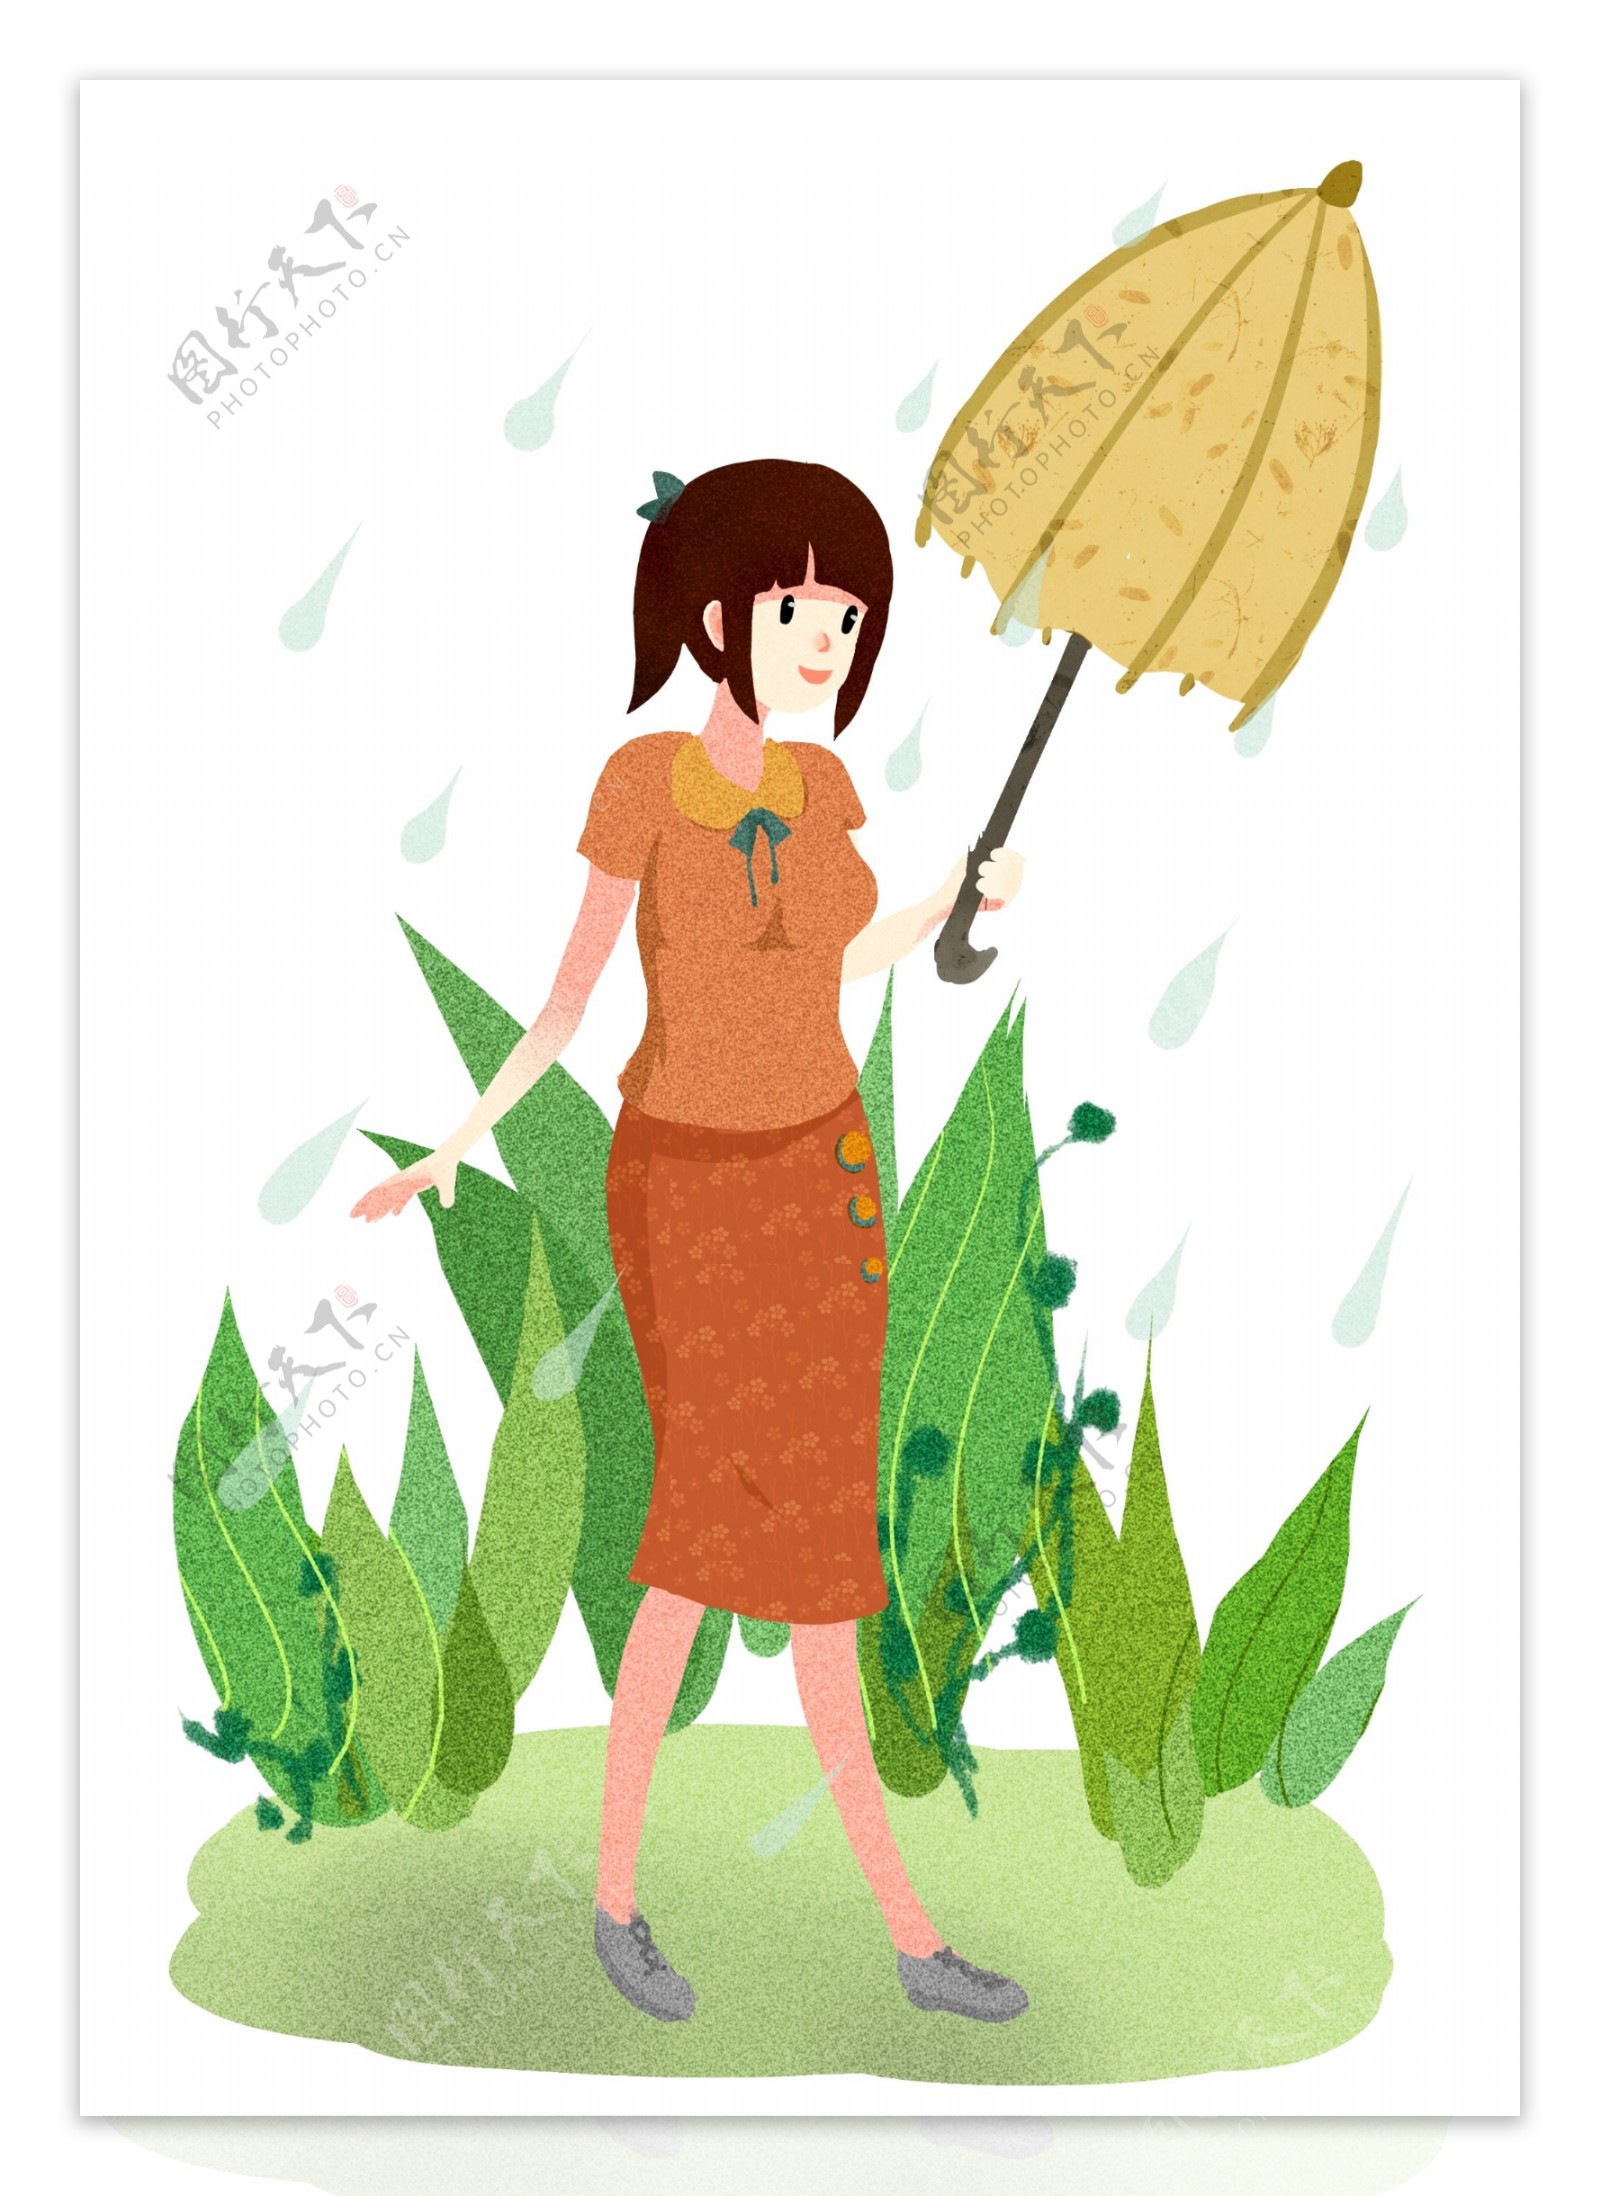 清明节撑伞的女孩插画